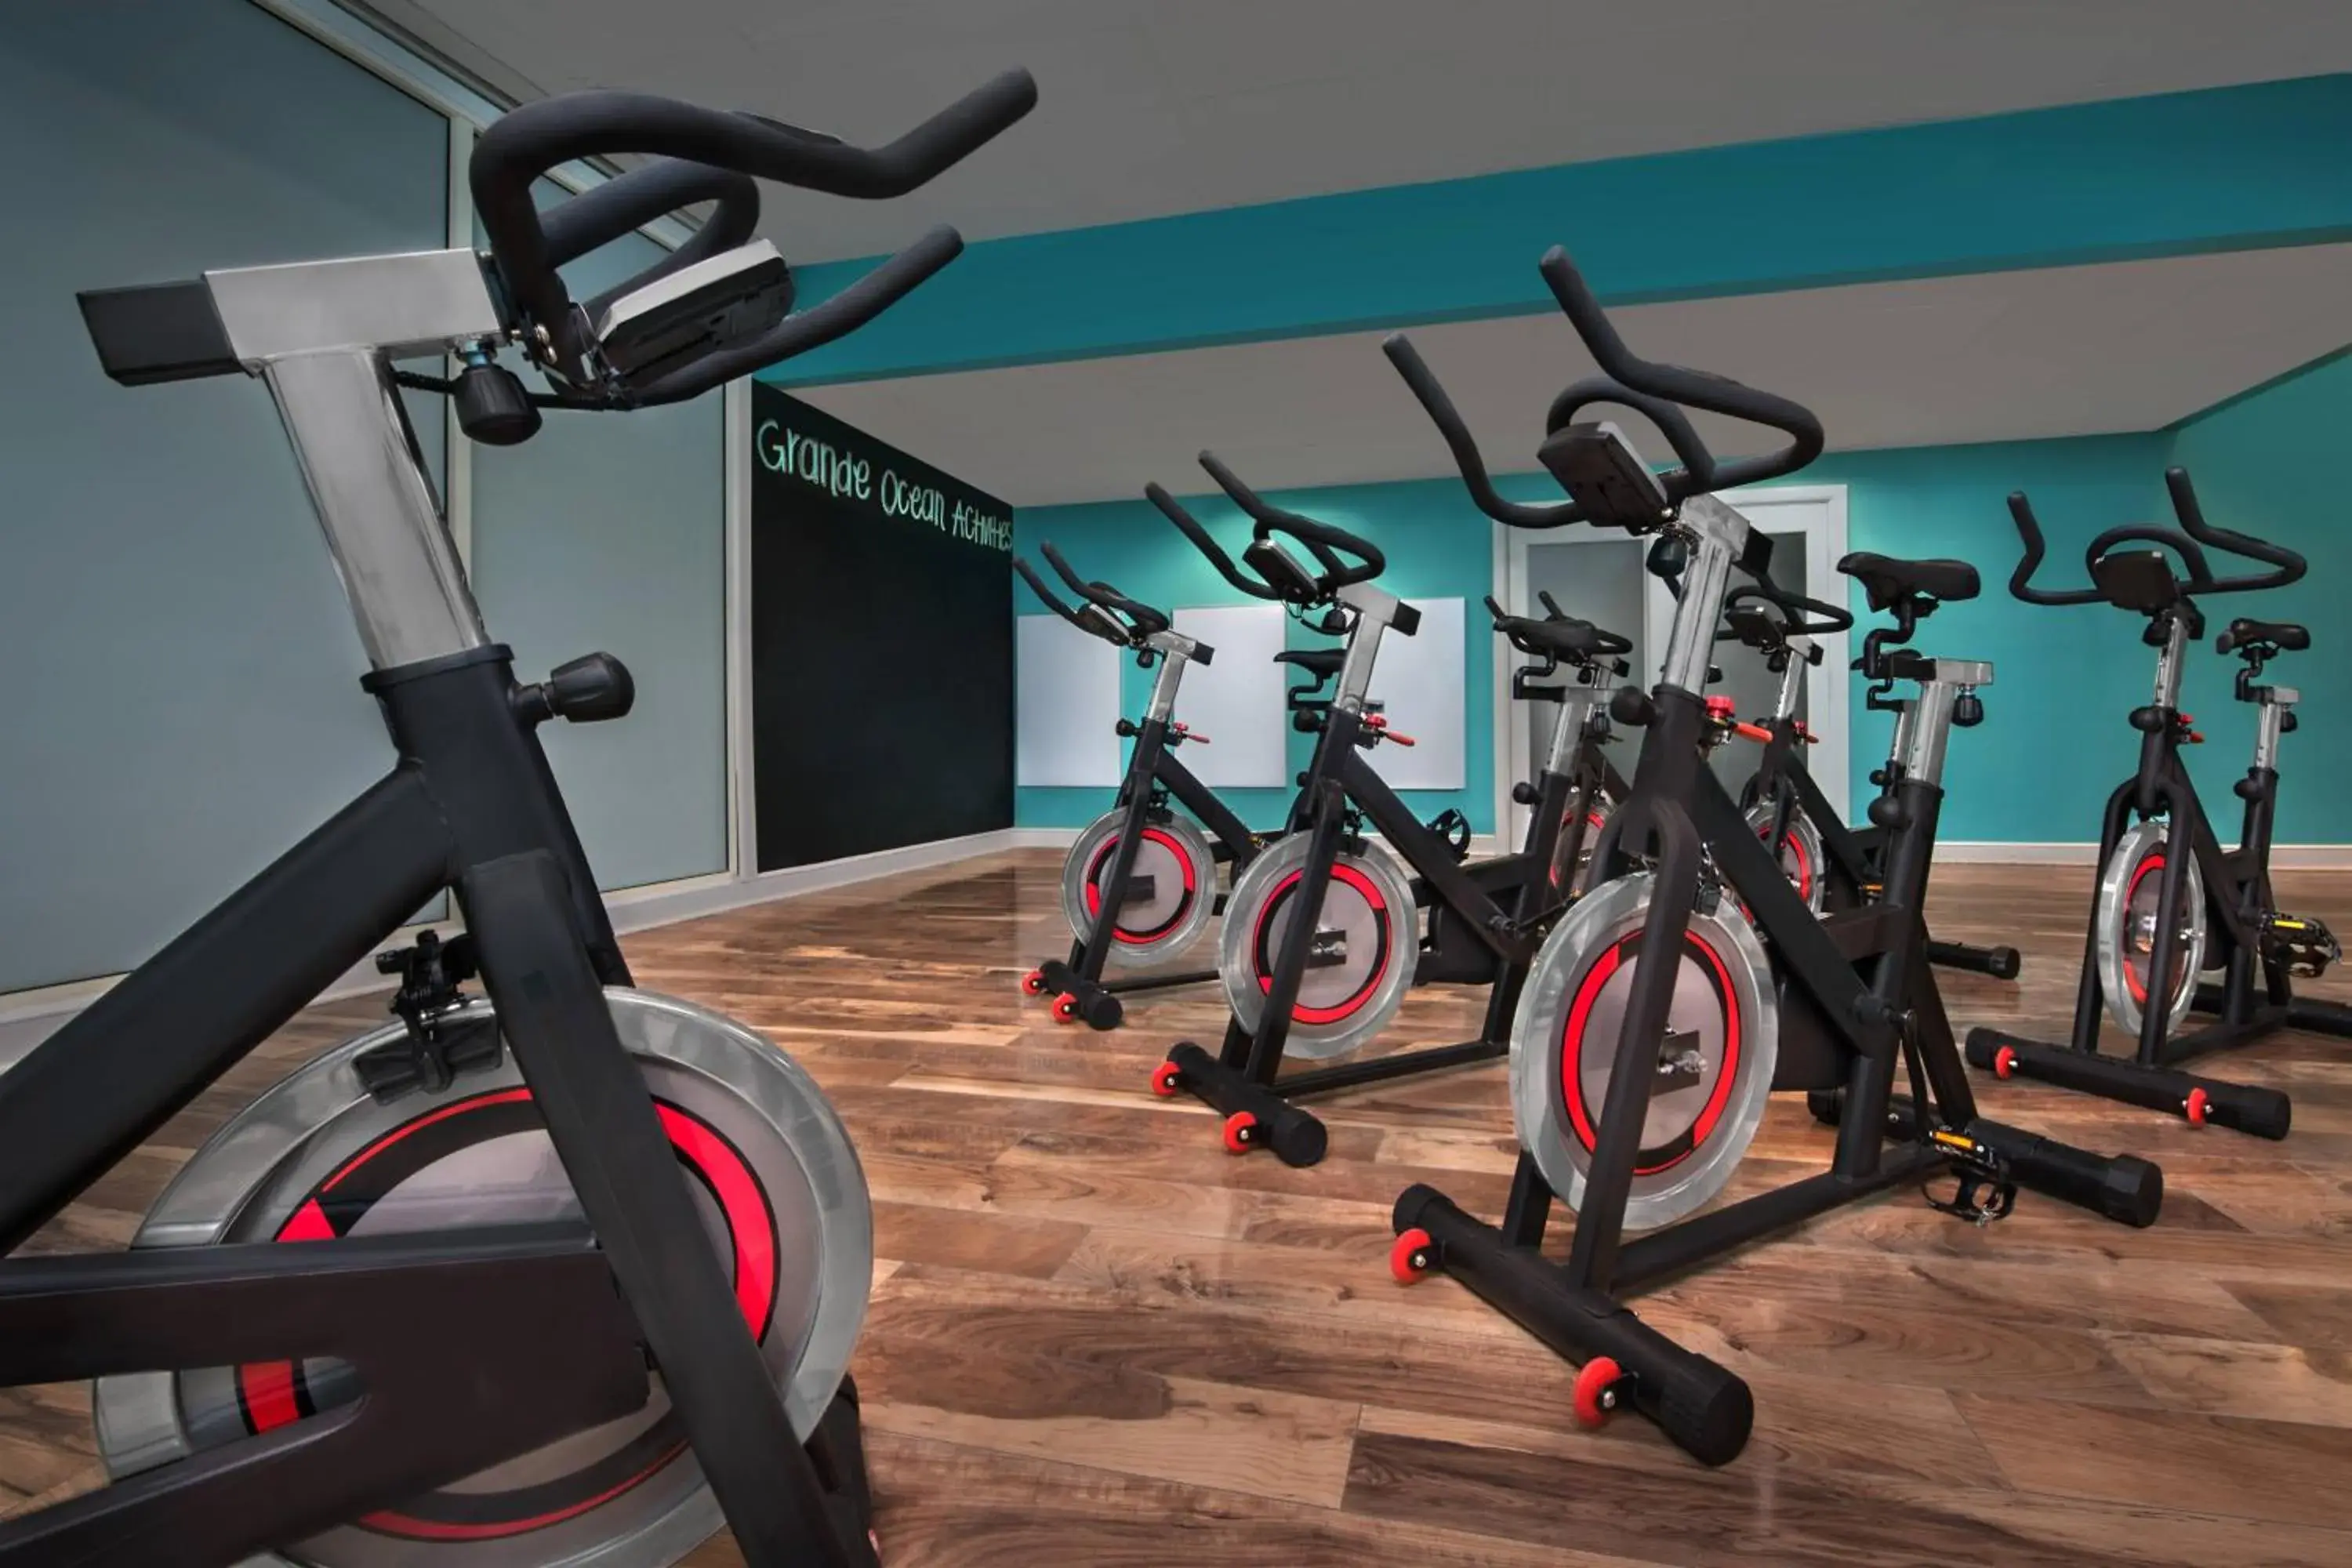 Fitness centre/facilities, Fitness Center/Facilities in Marriott's Grande Ocean